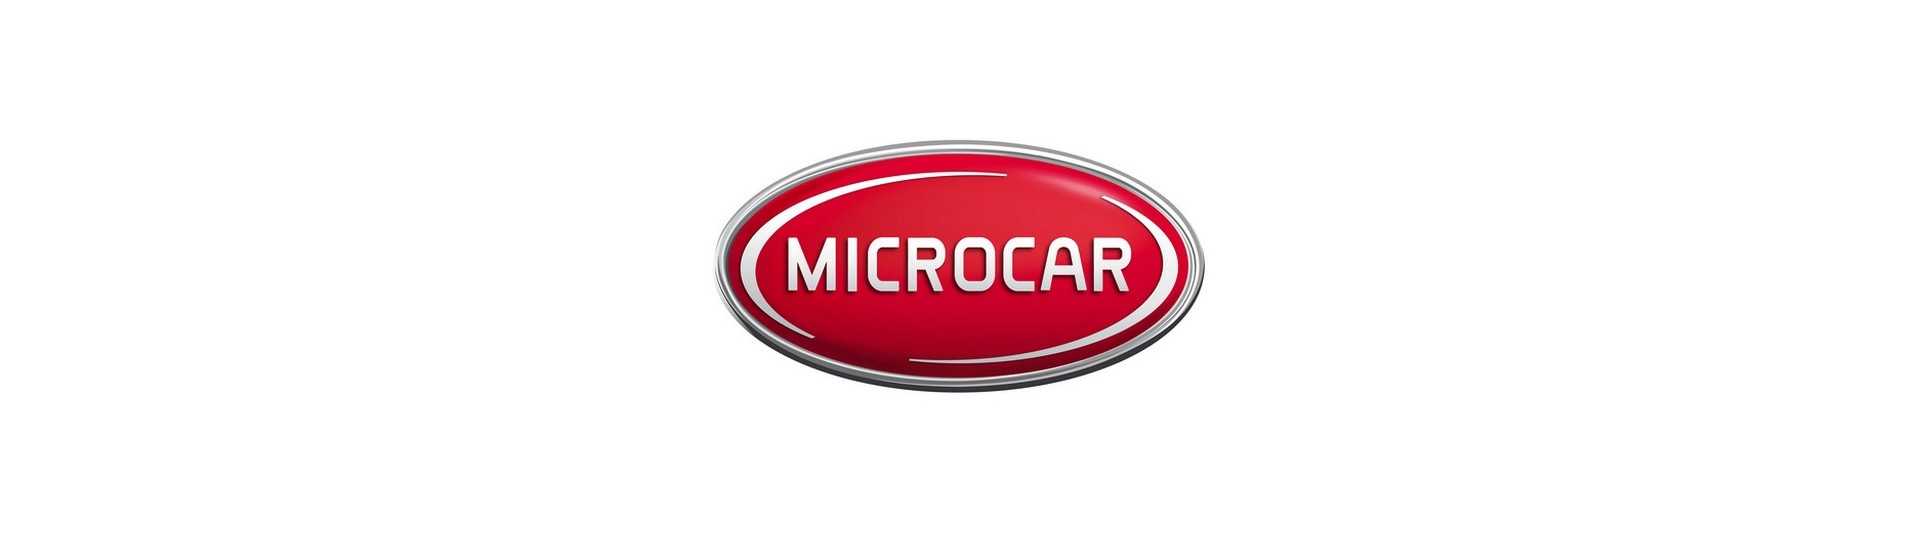 Cable de contador de precio mejor para coche sin permiso Microcar